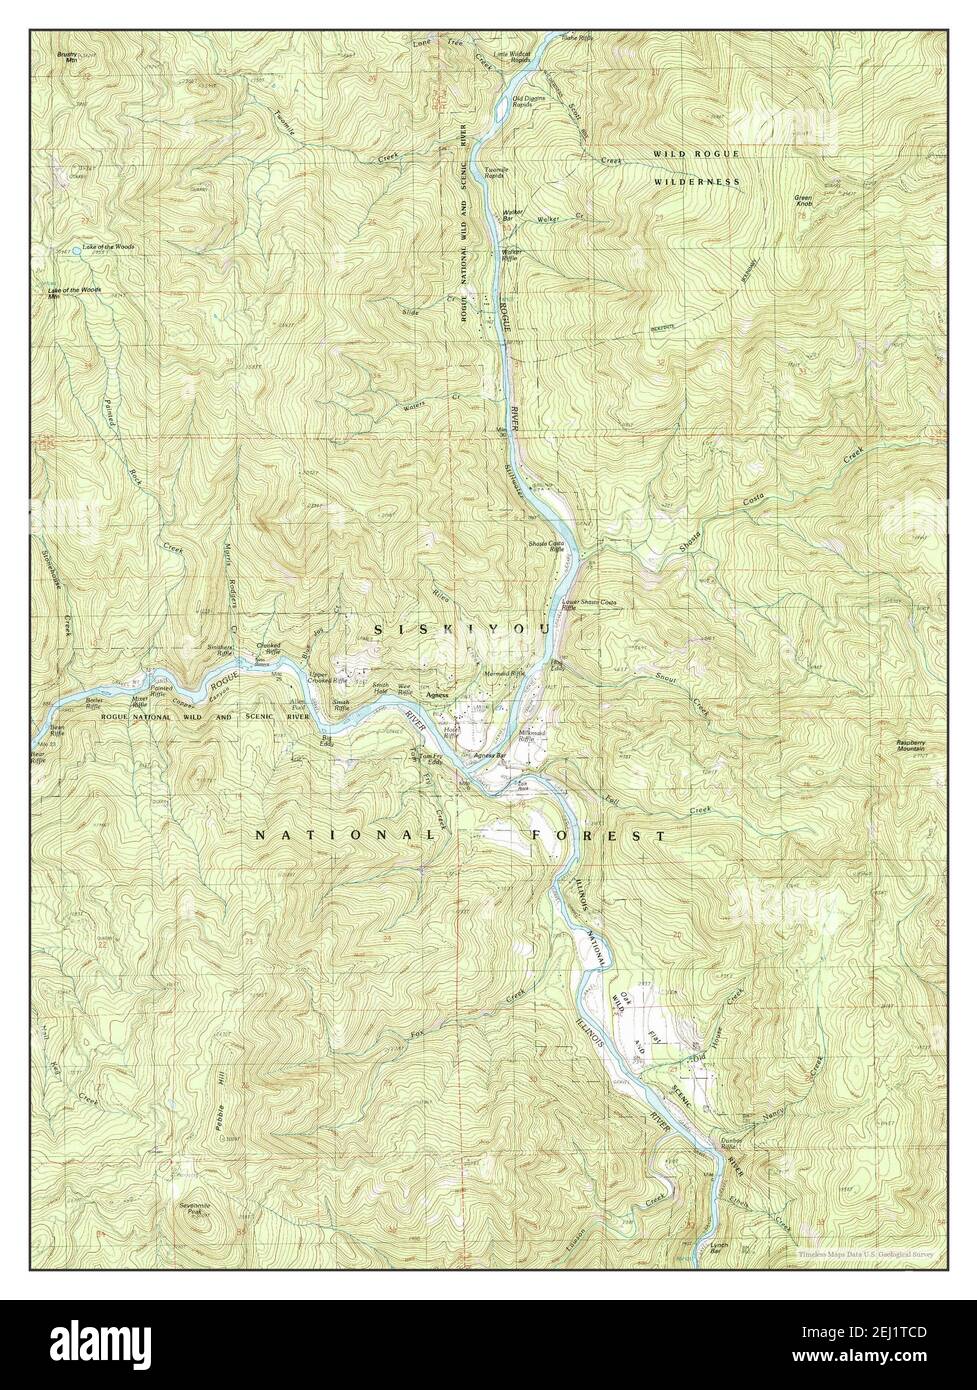 Agness Oregon Map 1989 1 24000 Estados Unidos De America Por Timeless Maps Data U S Geological Survey 2ej1tcd 